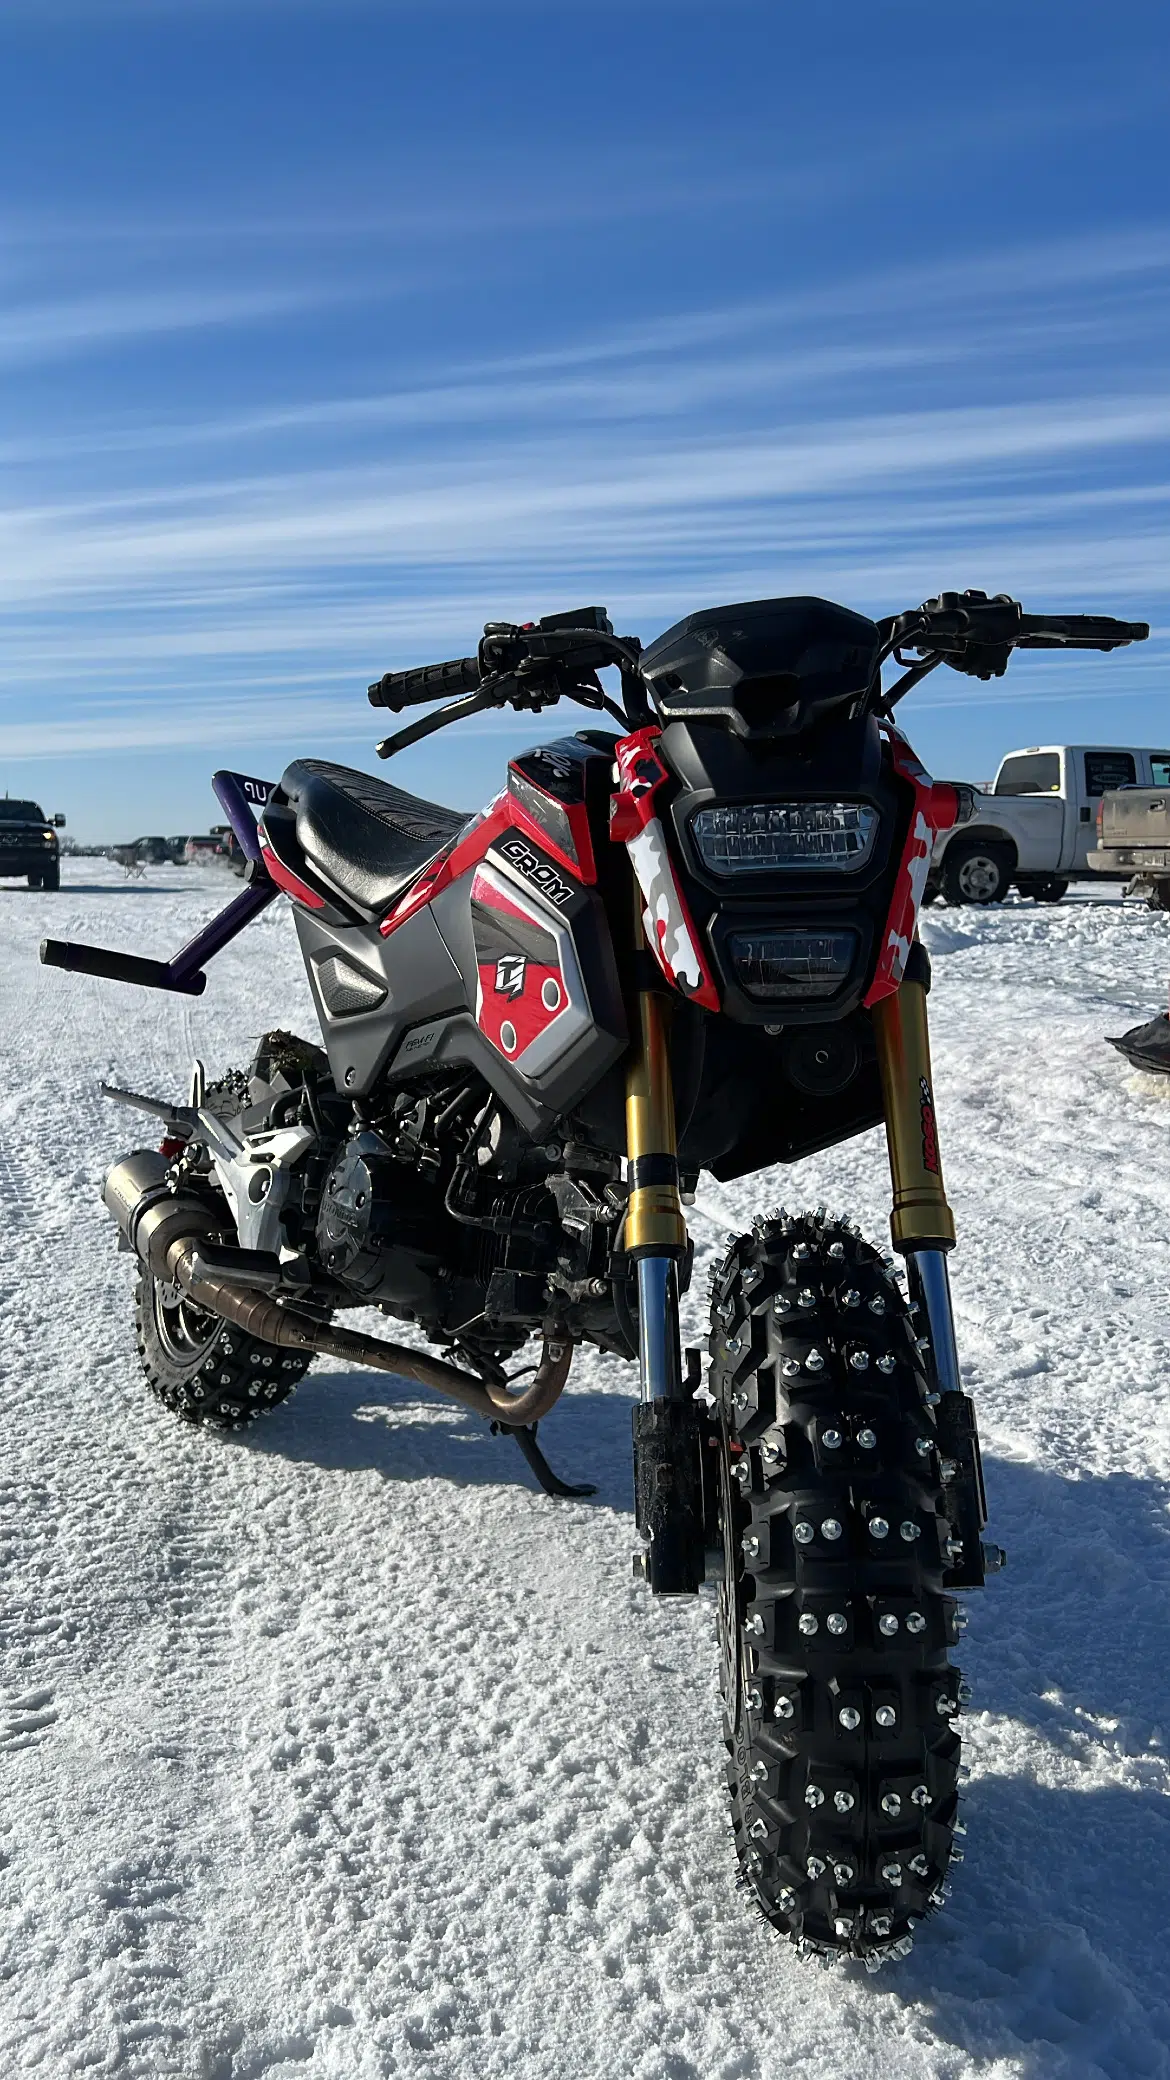 Sur place, on y retrouve plusieurs types de motos adaptée pour la glace.